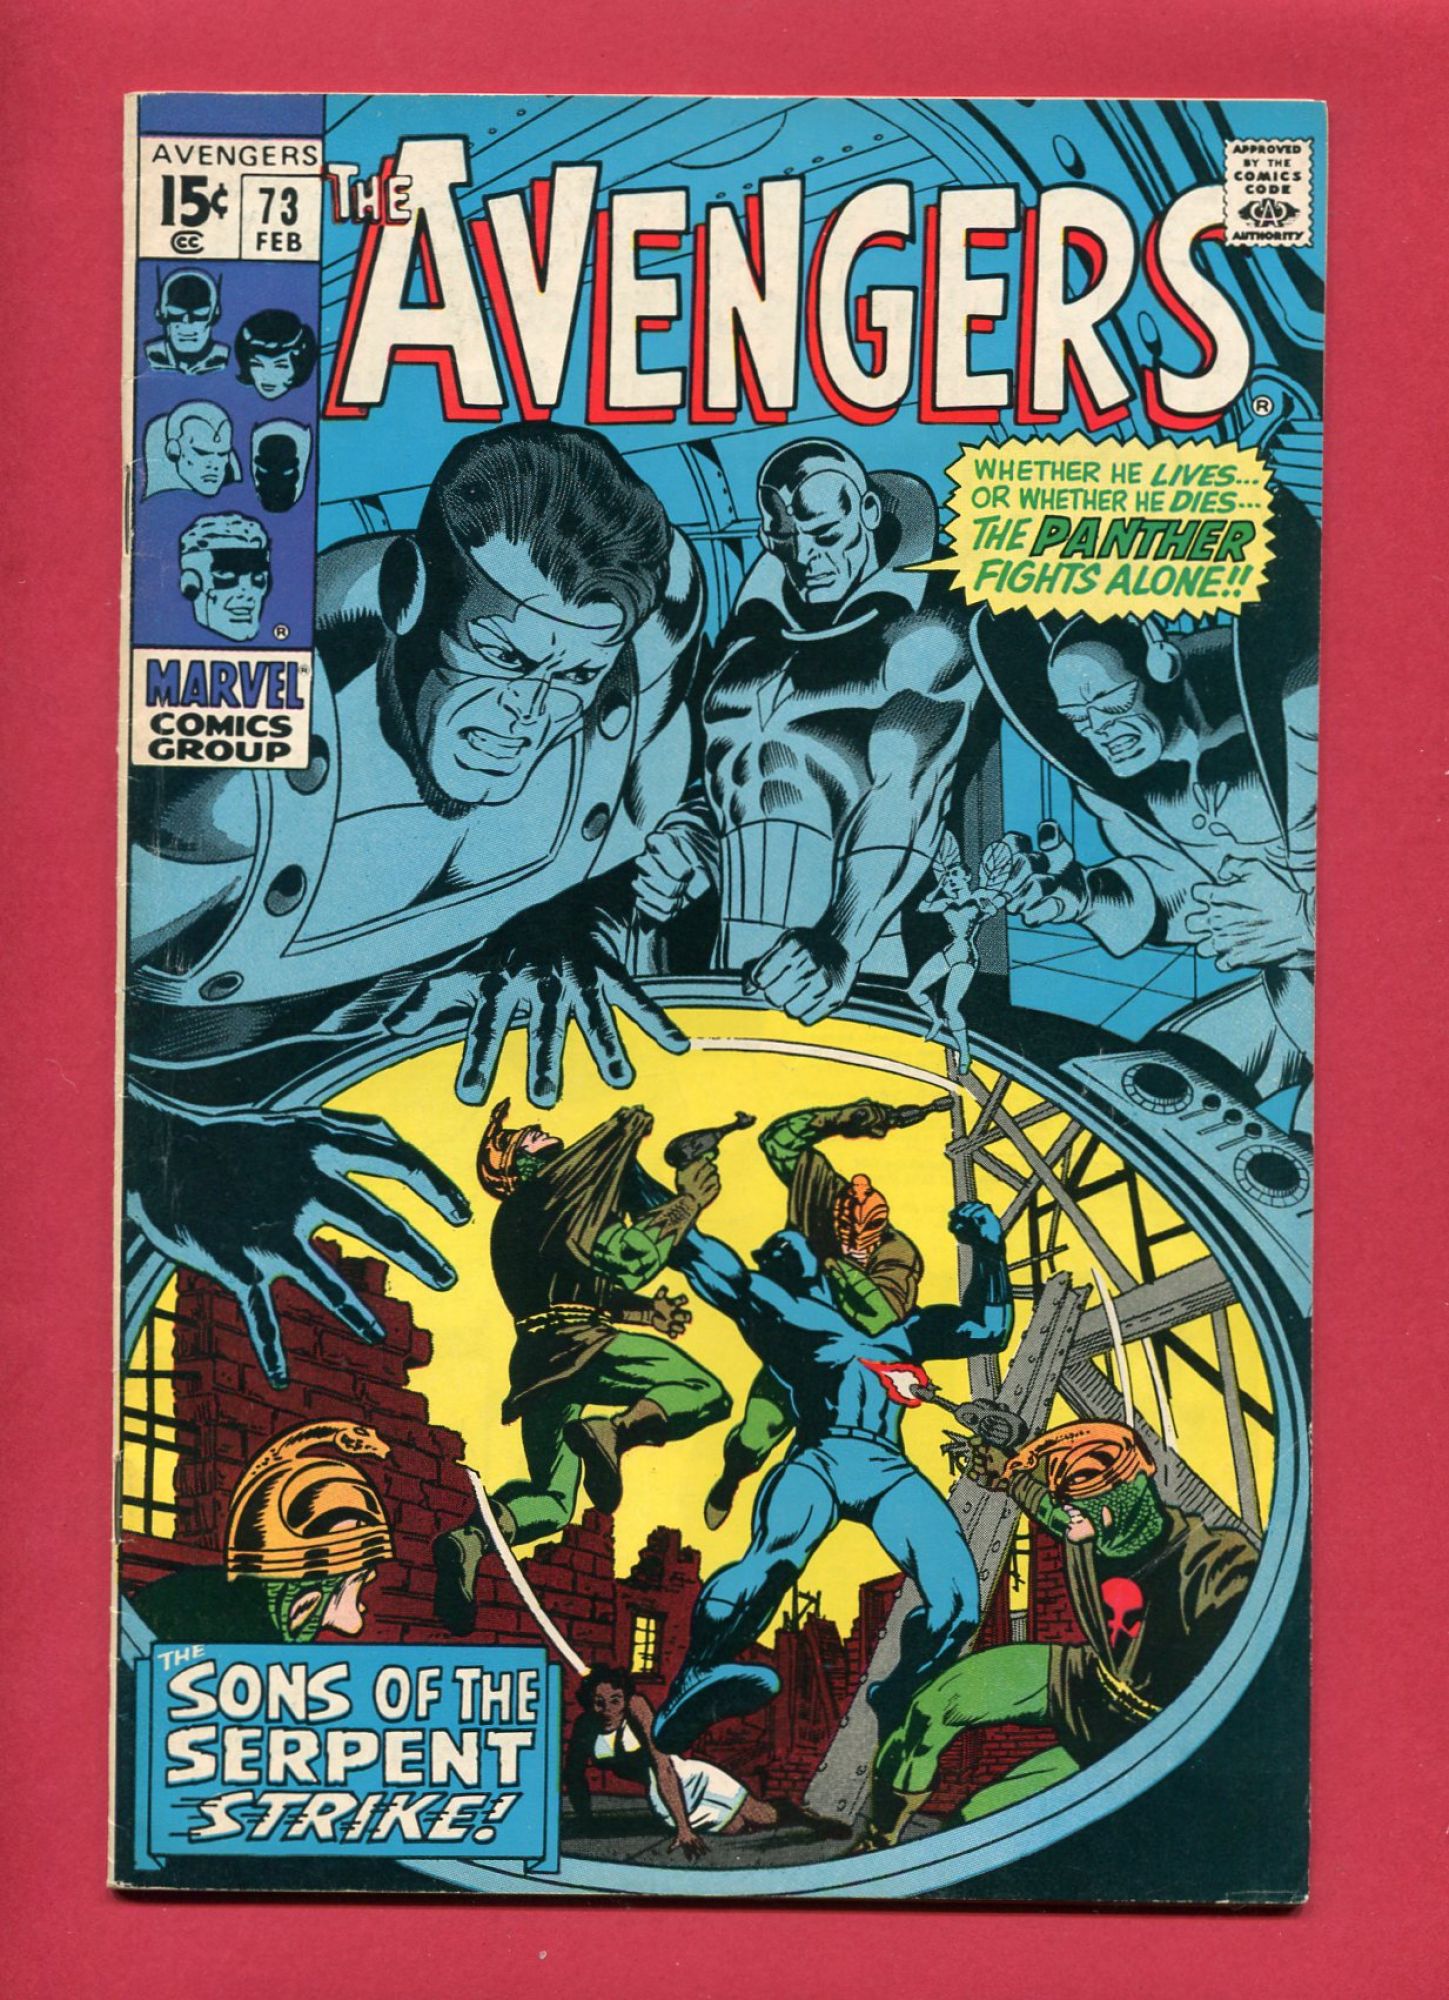 Avengers #73, Feb 1970, 6.5 FN+